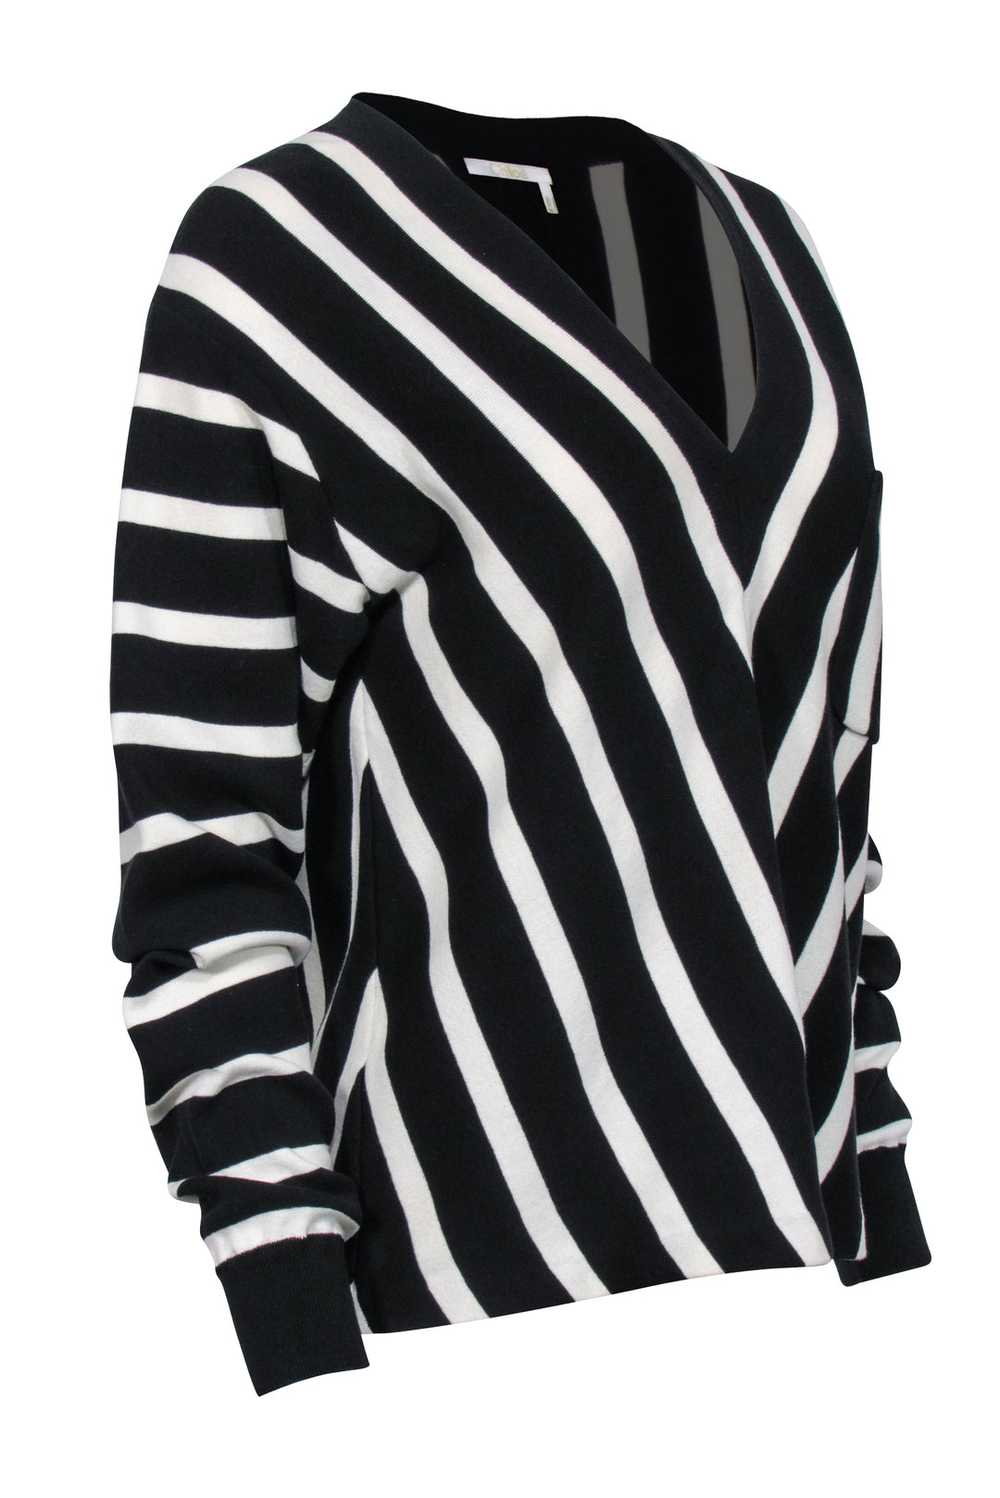 Chloe - Black & White Striped Cotton Sweater Sz L - image 2